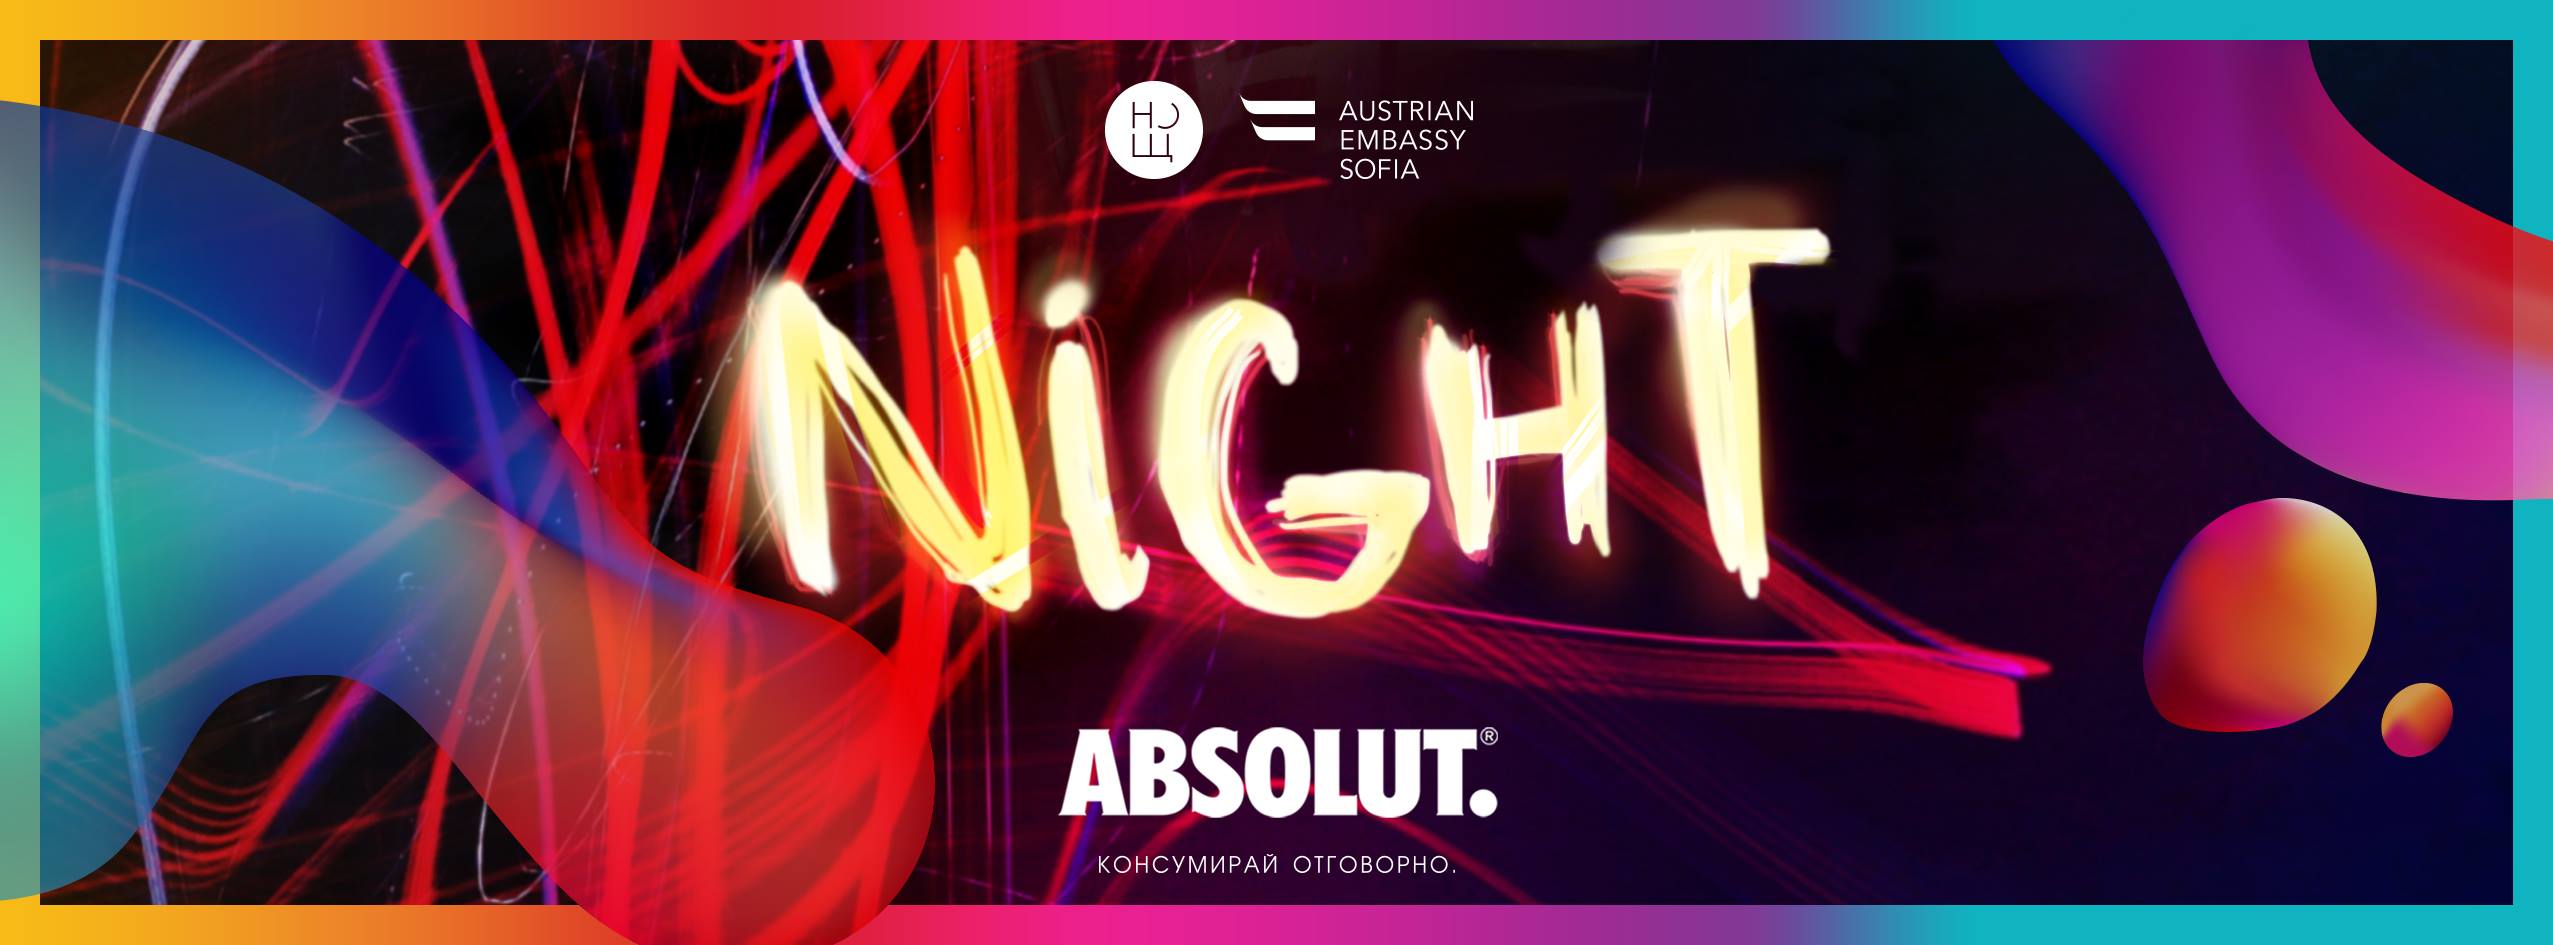 Absolut подготвя поредното яко парти на Нощ/Пловдив 2017